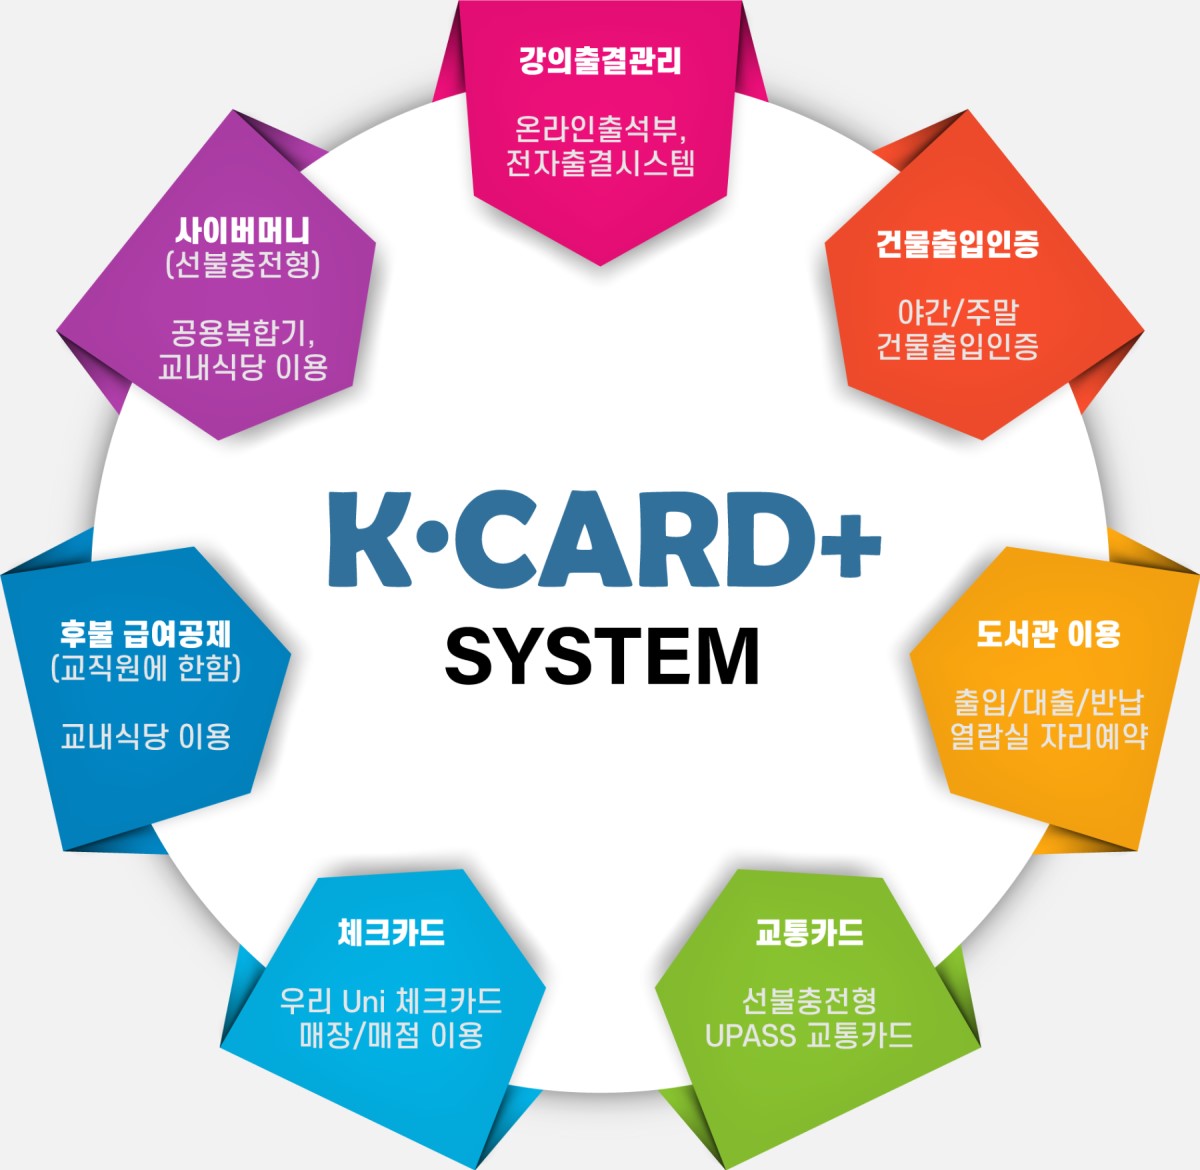 K·CARD+ 시스템 이용 안내